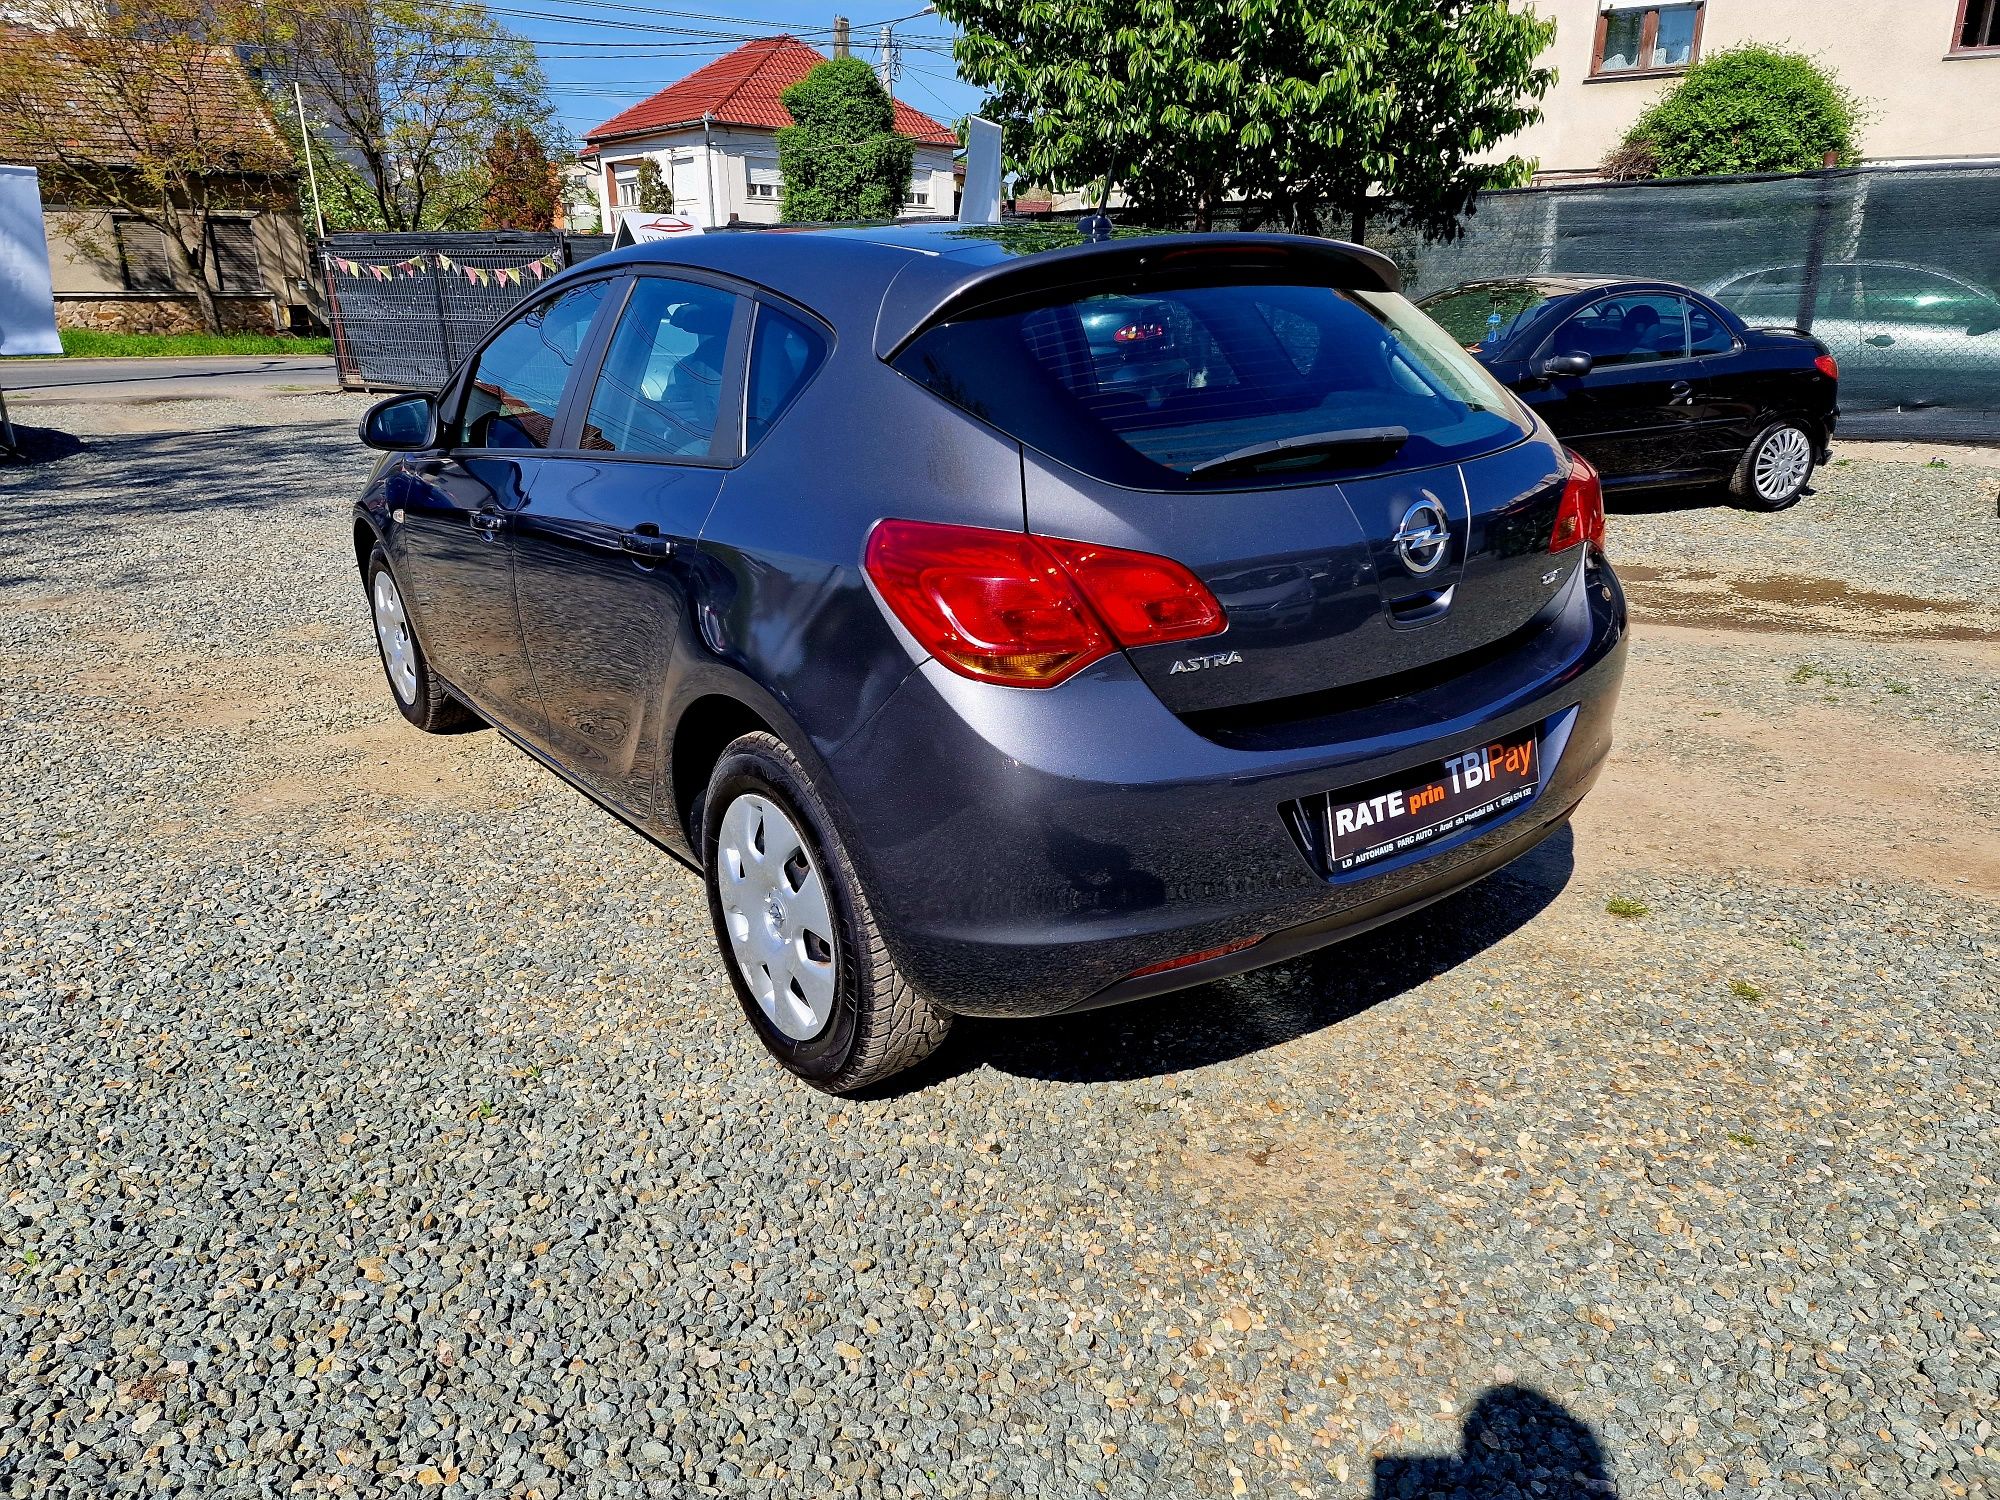 Opel Astra J 1.7 Cdti Parc Auto Rate sau Cash